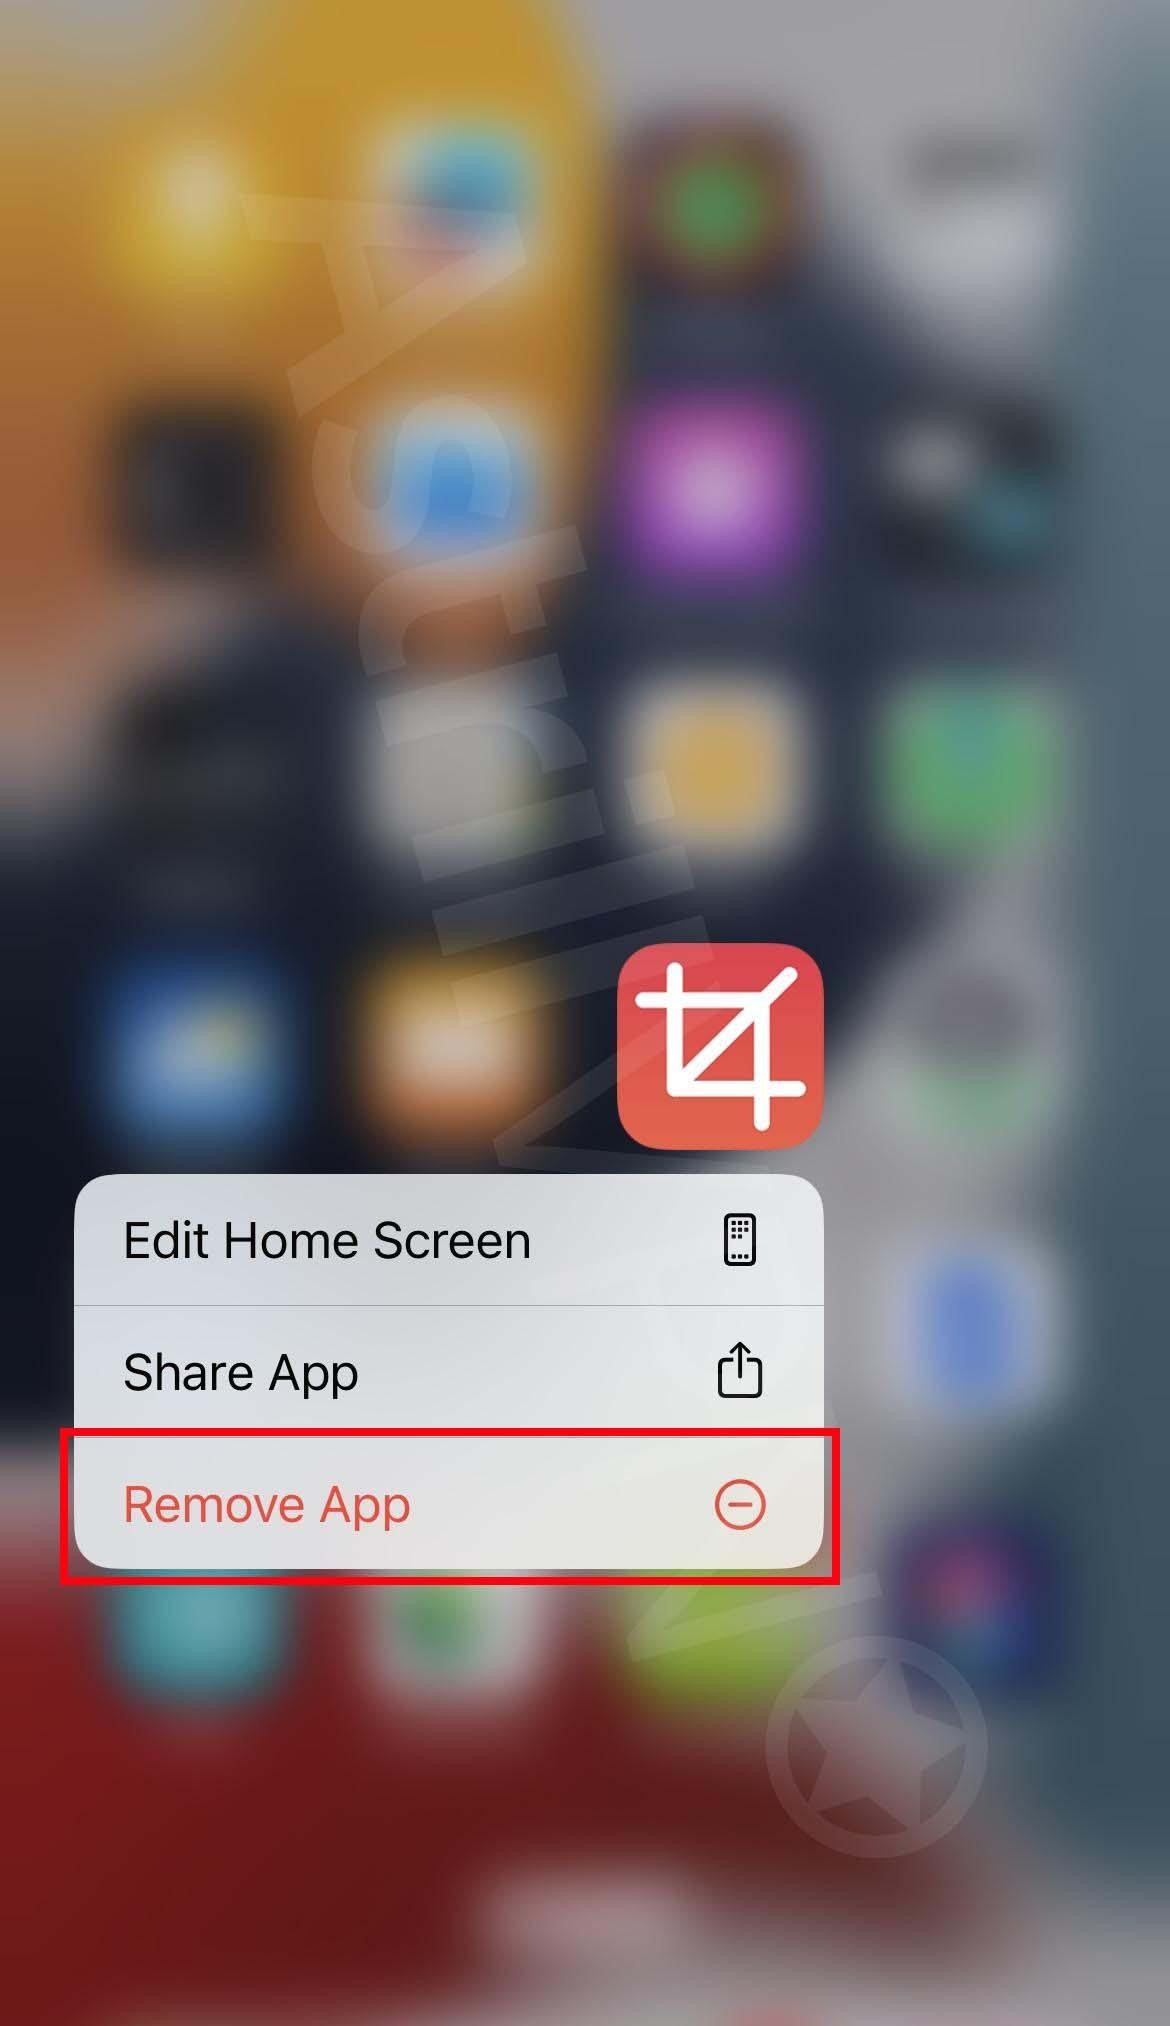 click Remove App